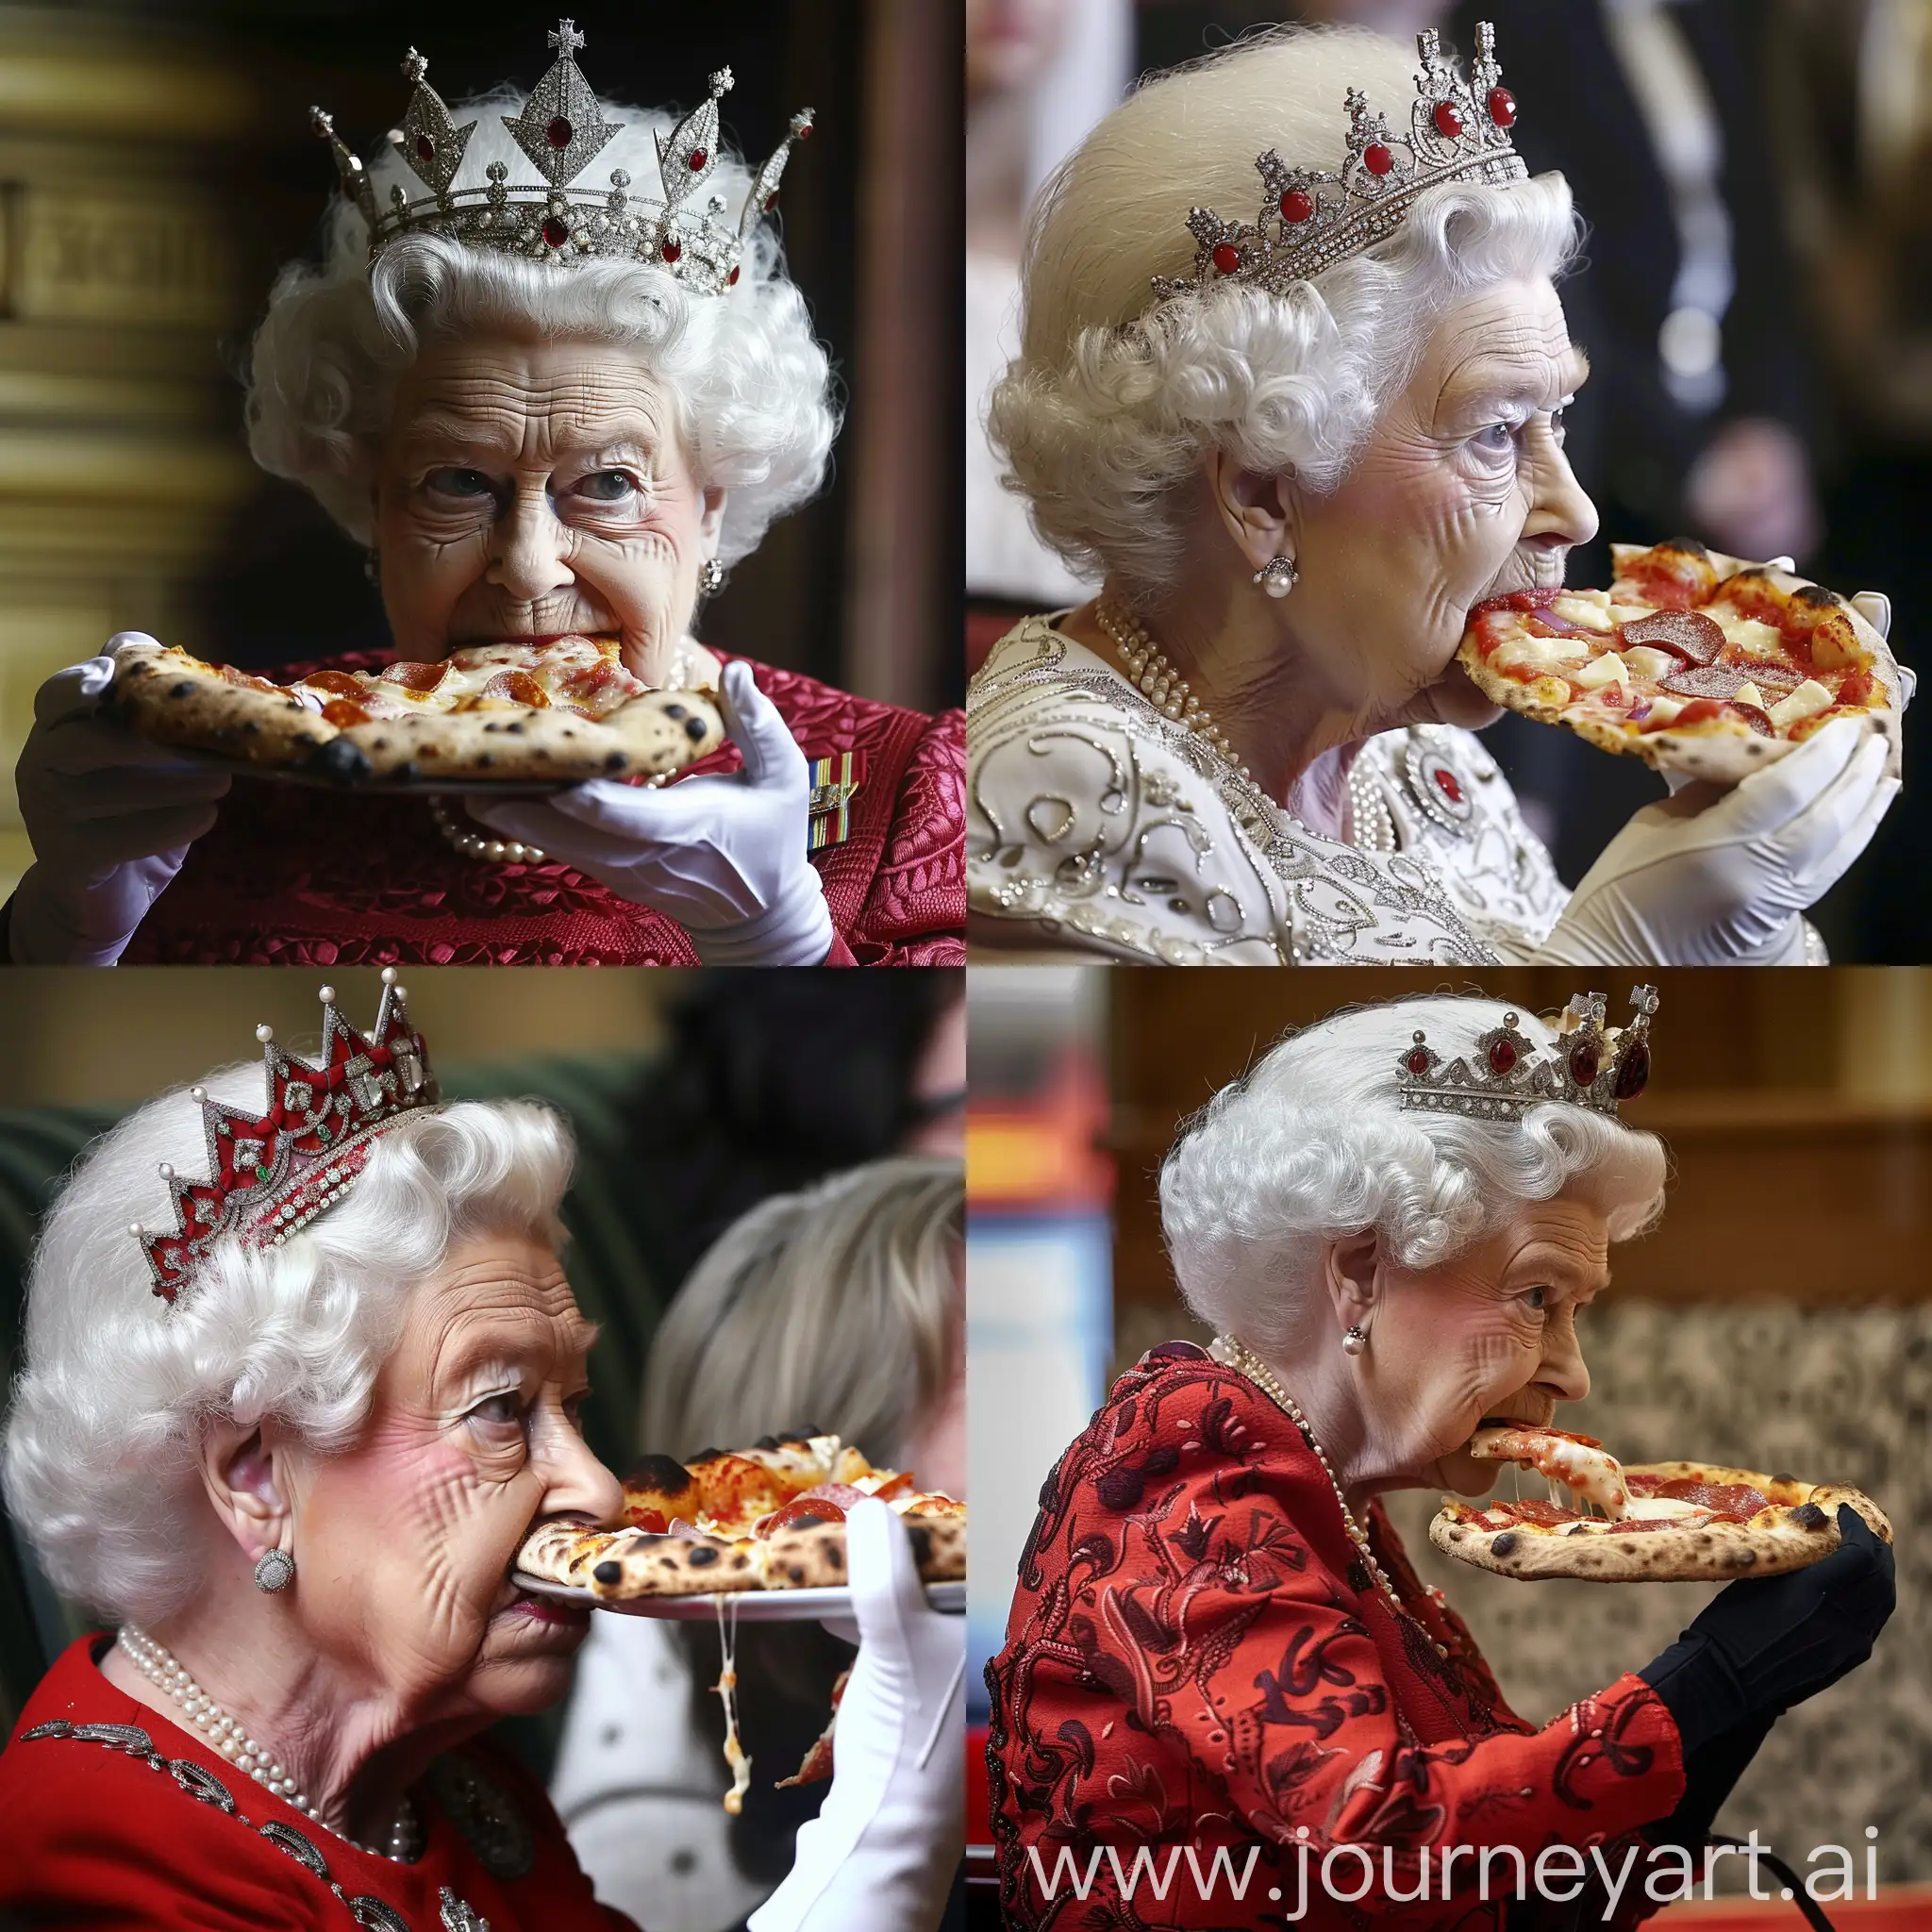 Queen Elizabeth II eating pizza